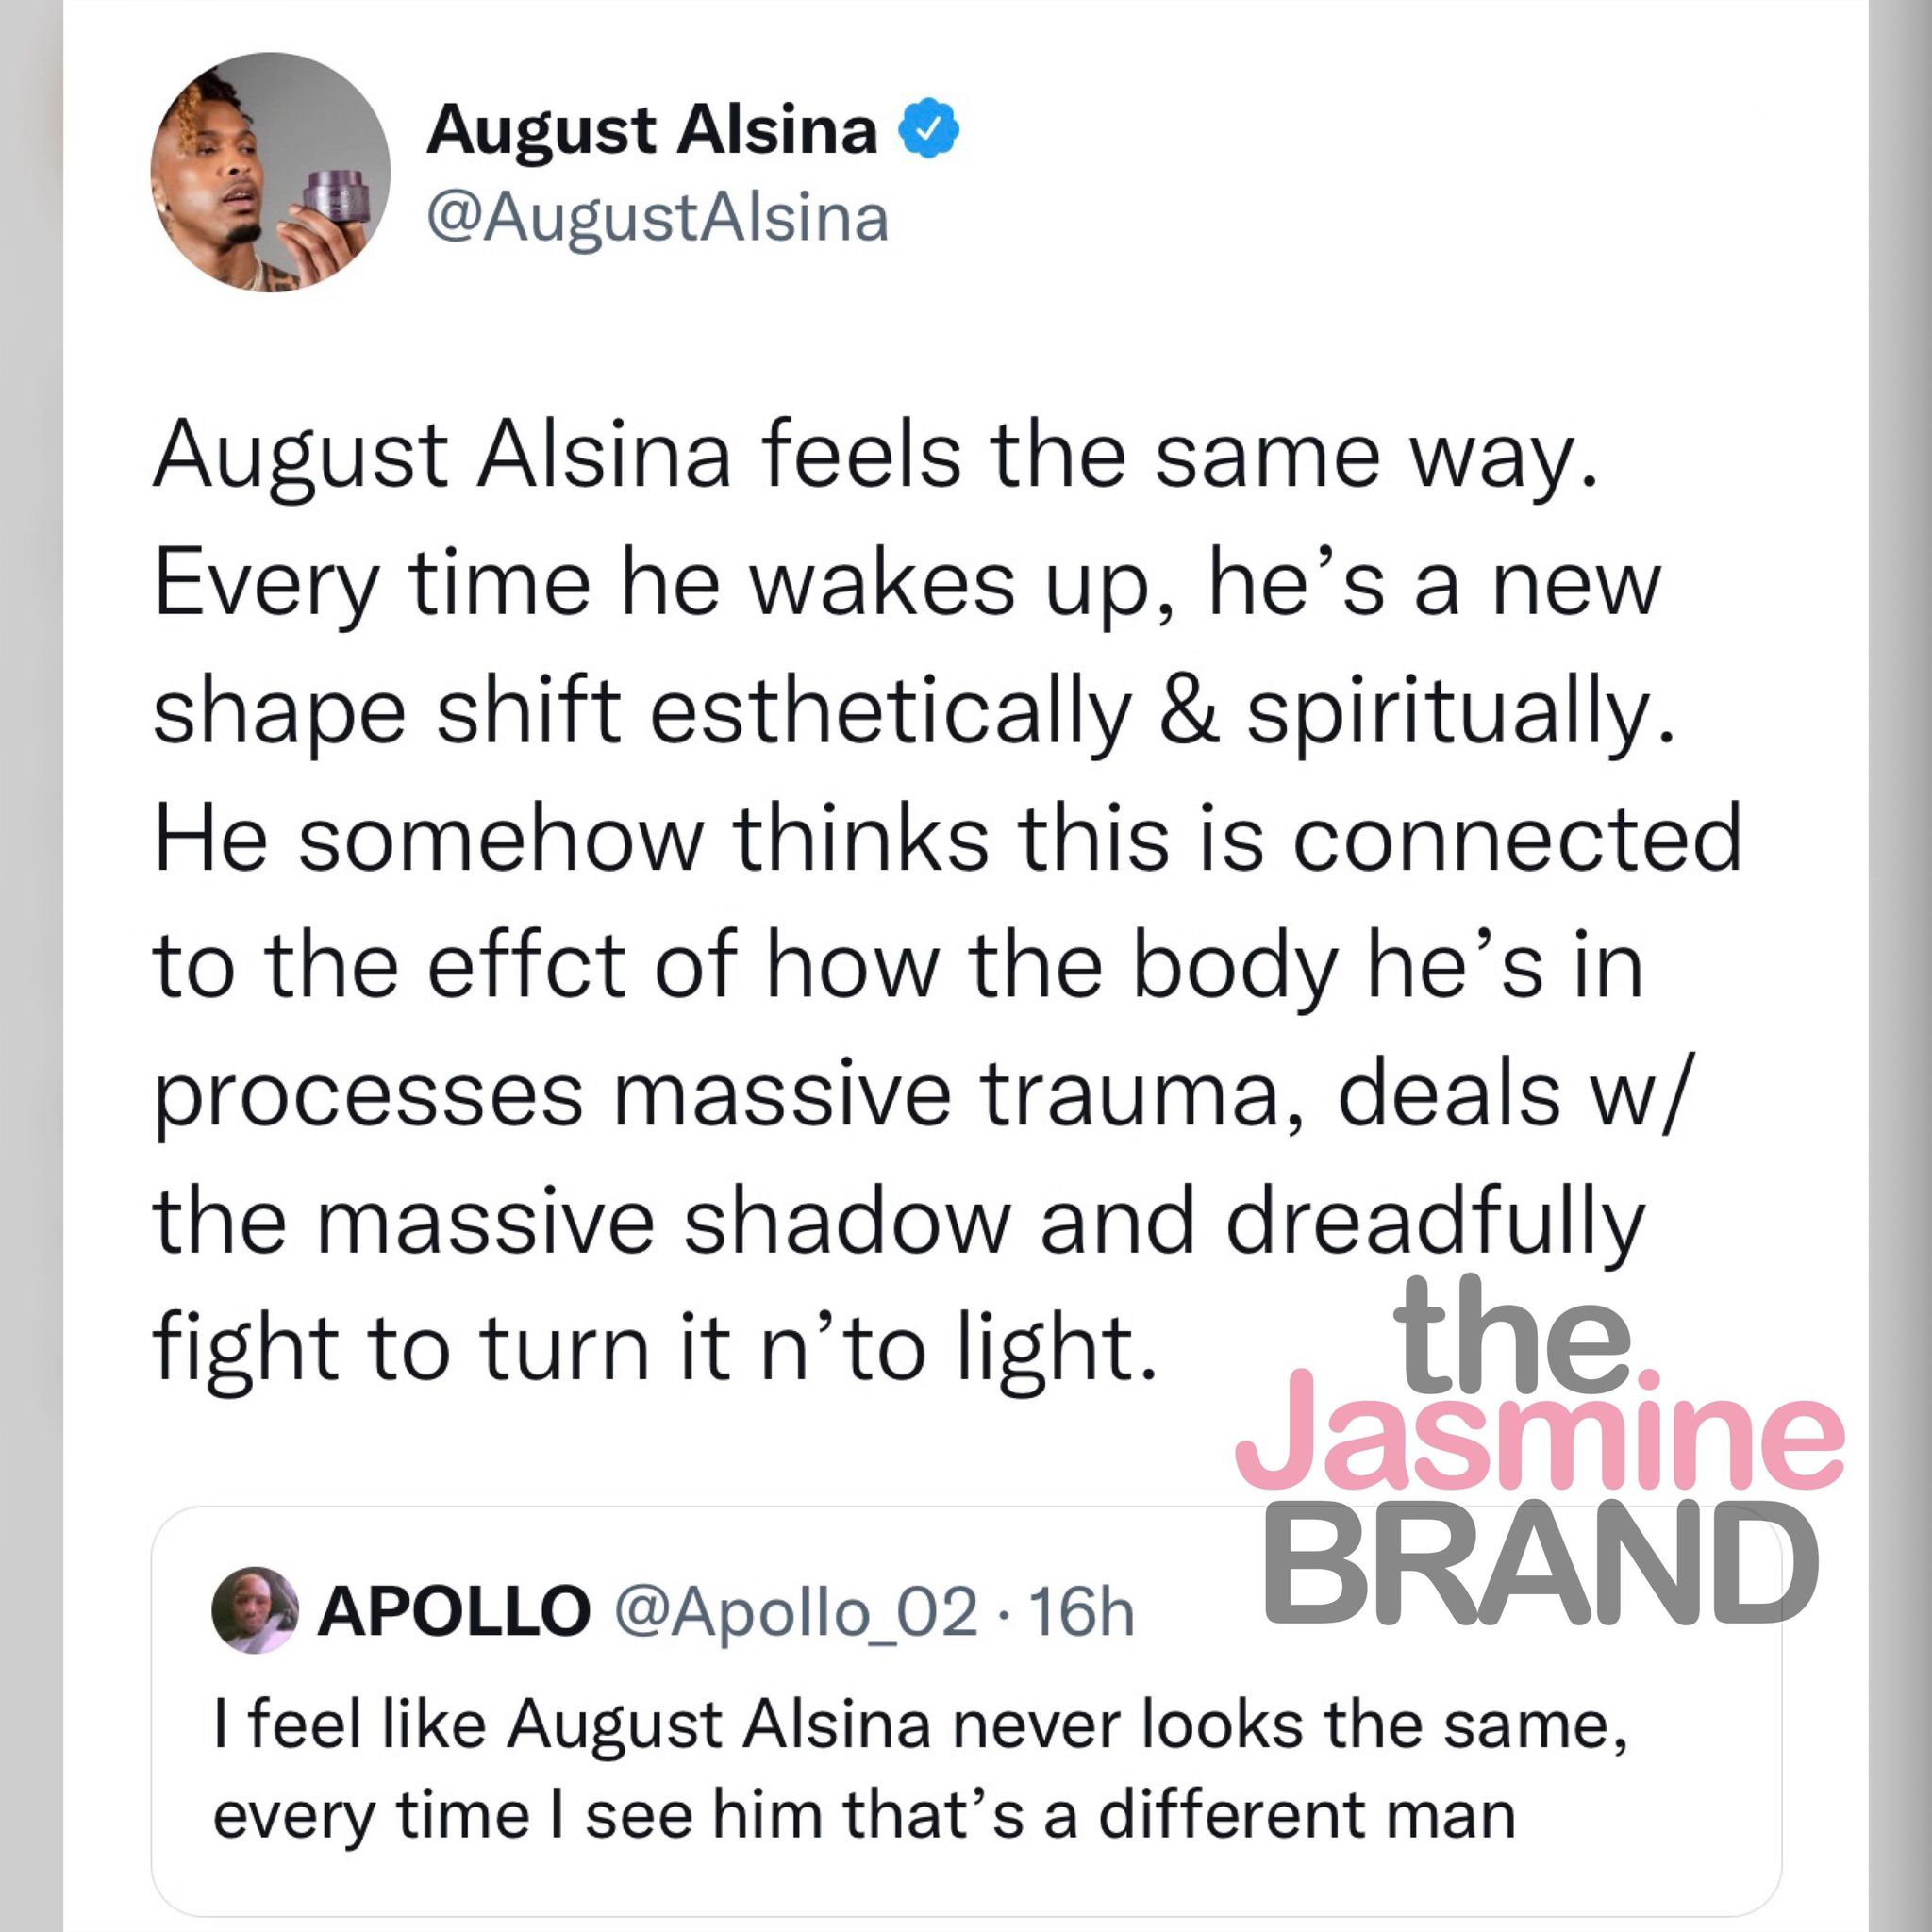 August Alsina, Fiziksel Görünümünün Değiştiğine İlişkin İddiaları Ele Aldı: Bu, İçinde Bulunduğum Bedenin Büyük Travma Sürecini Nasıl Sürdürdüğüyle Bağlantılı